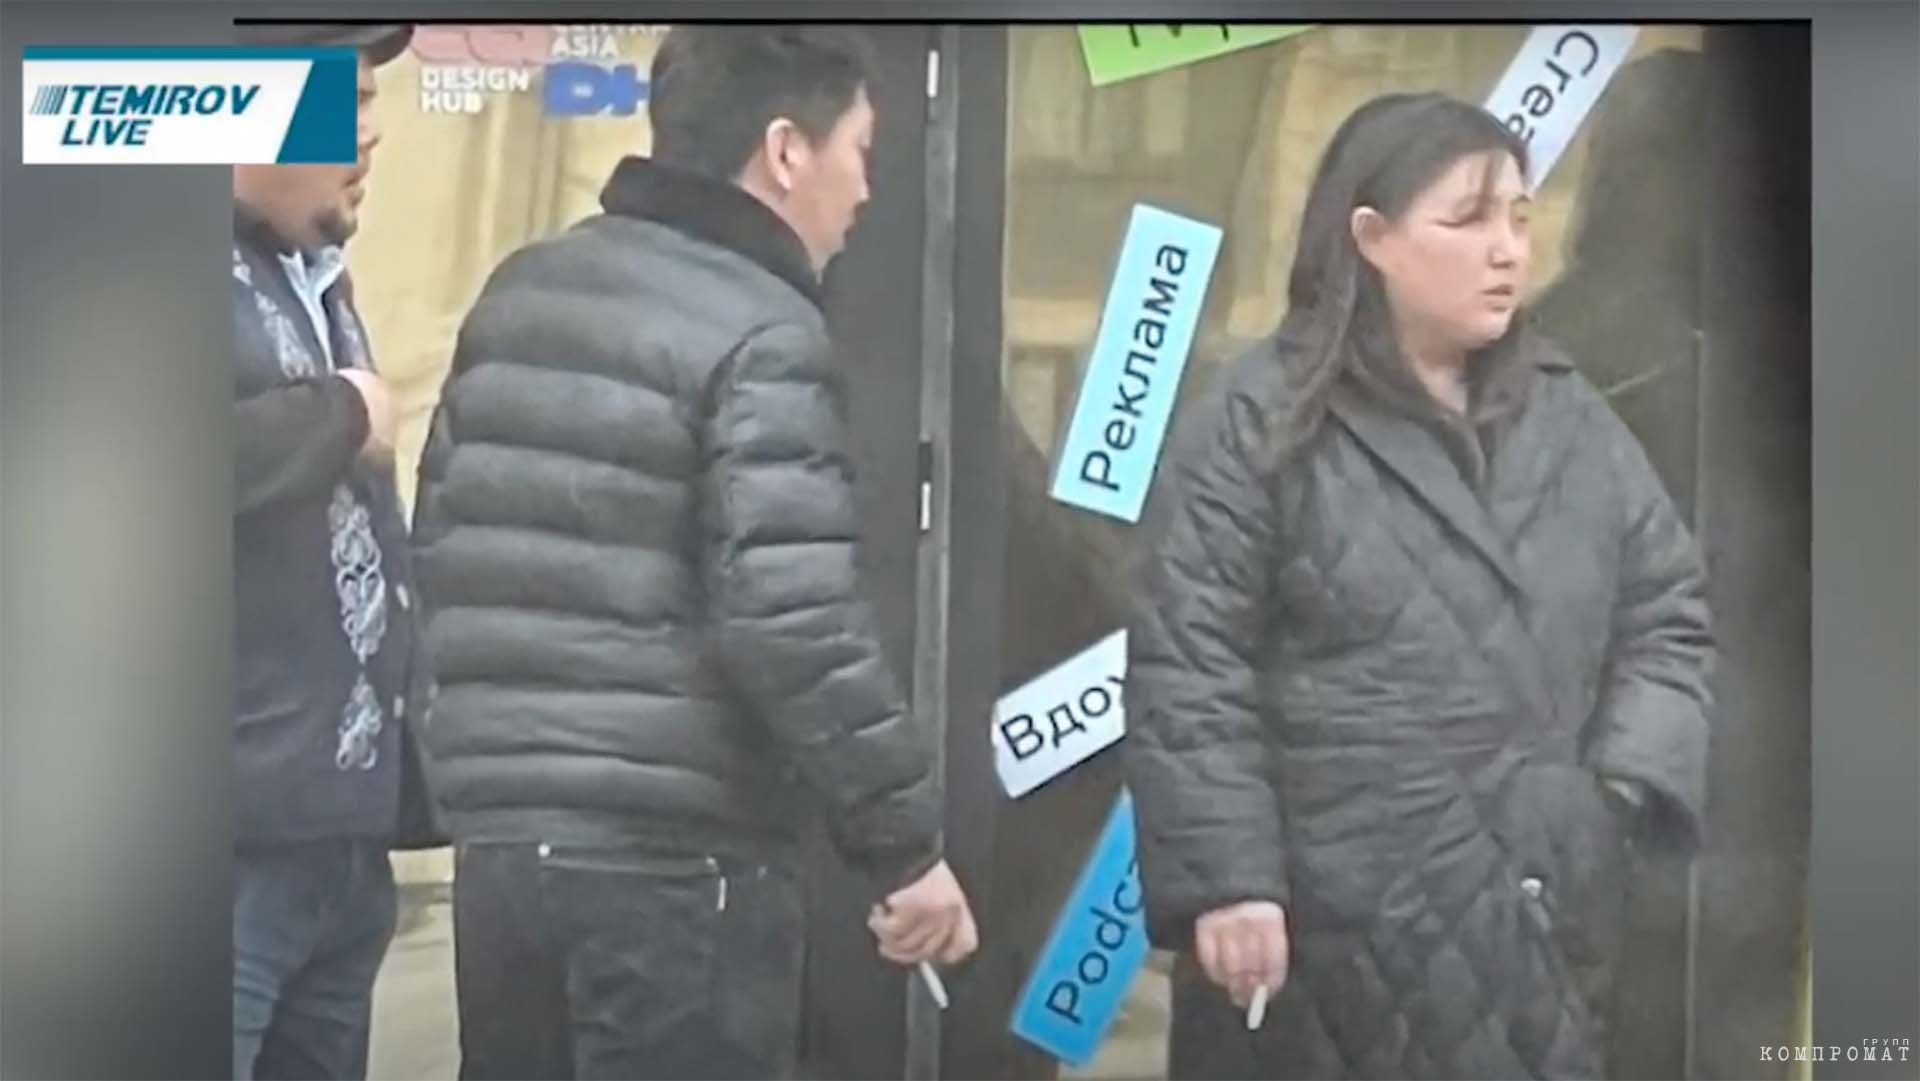 В пропагандистском ролике появляется тайно снятое фото сотрудников Temirov LIVE, в том числе жены Темирова. На снимке они курят у офиса